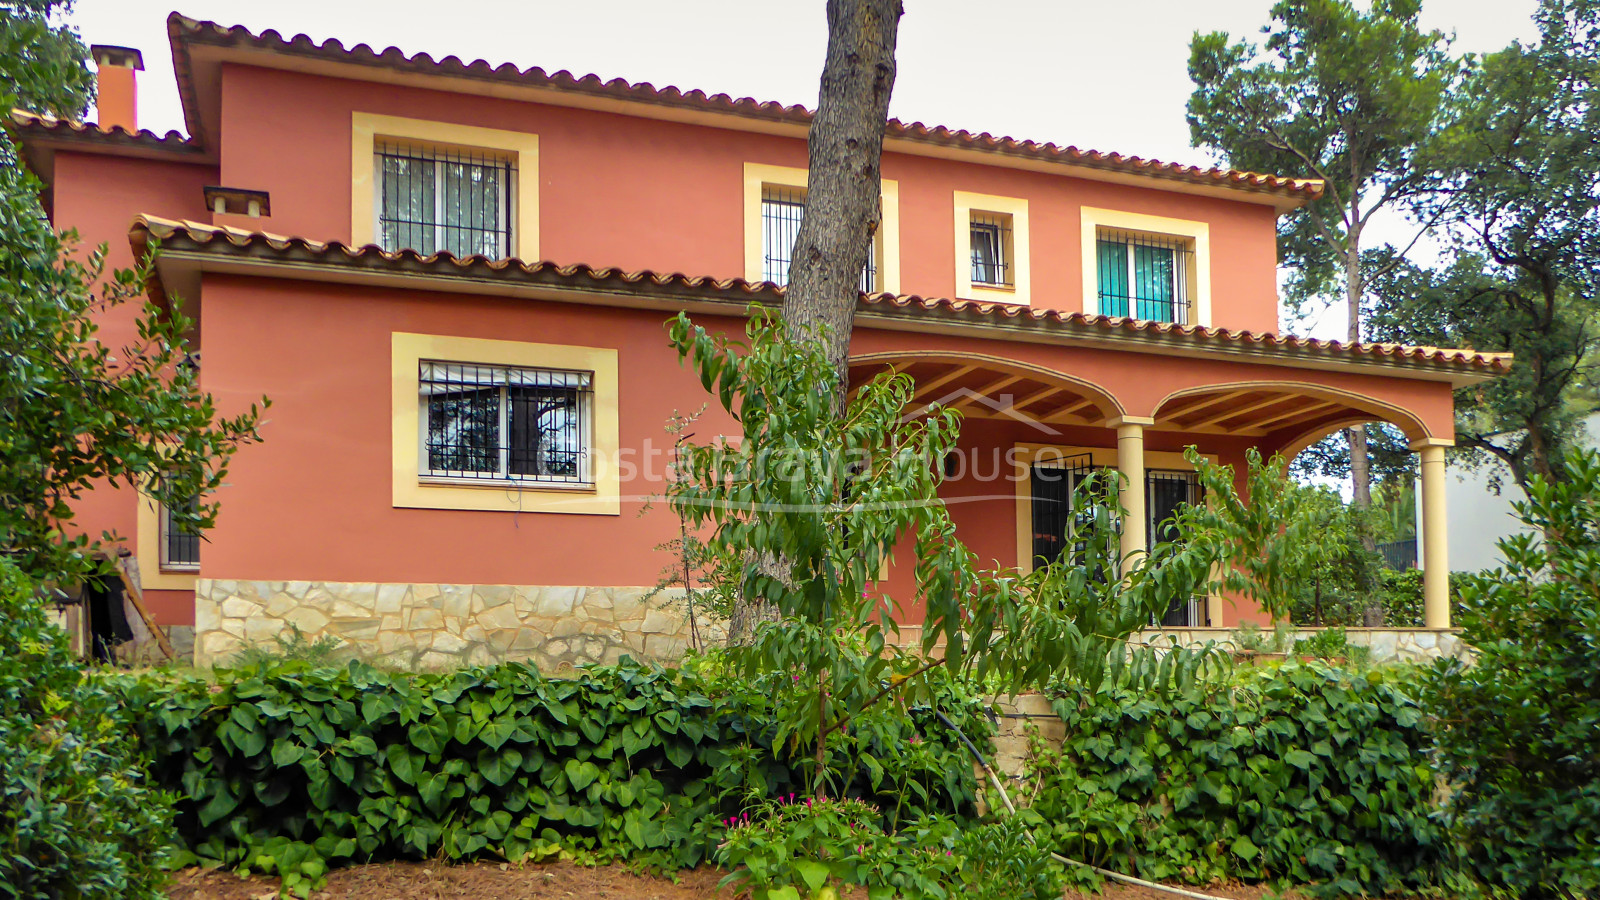 Casa mediterrània d'estil semi-rústic en venda a Tamariu